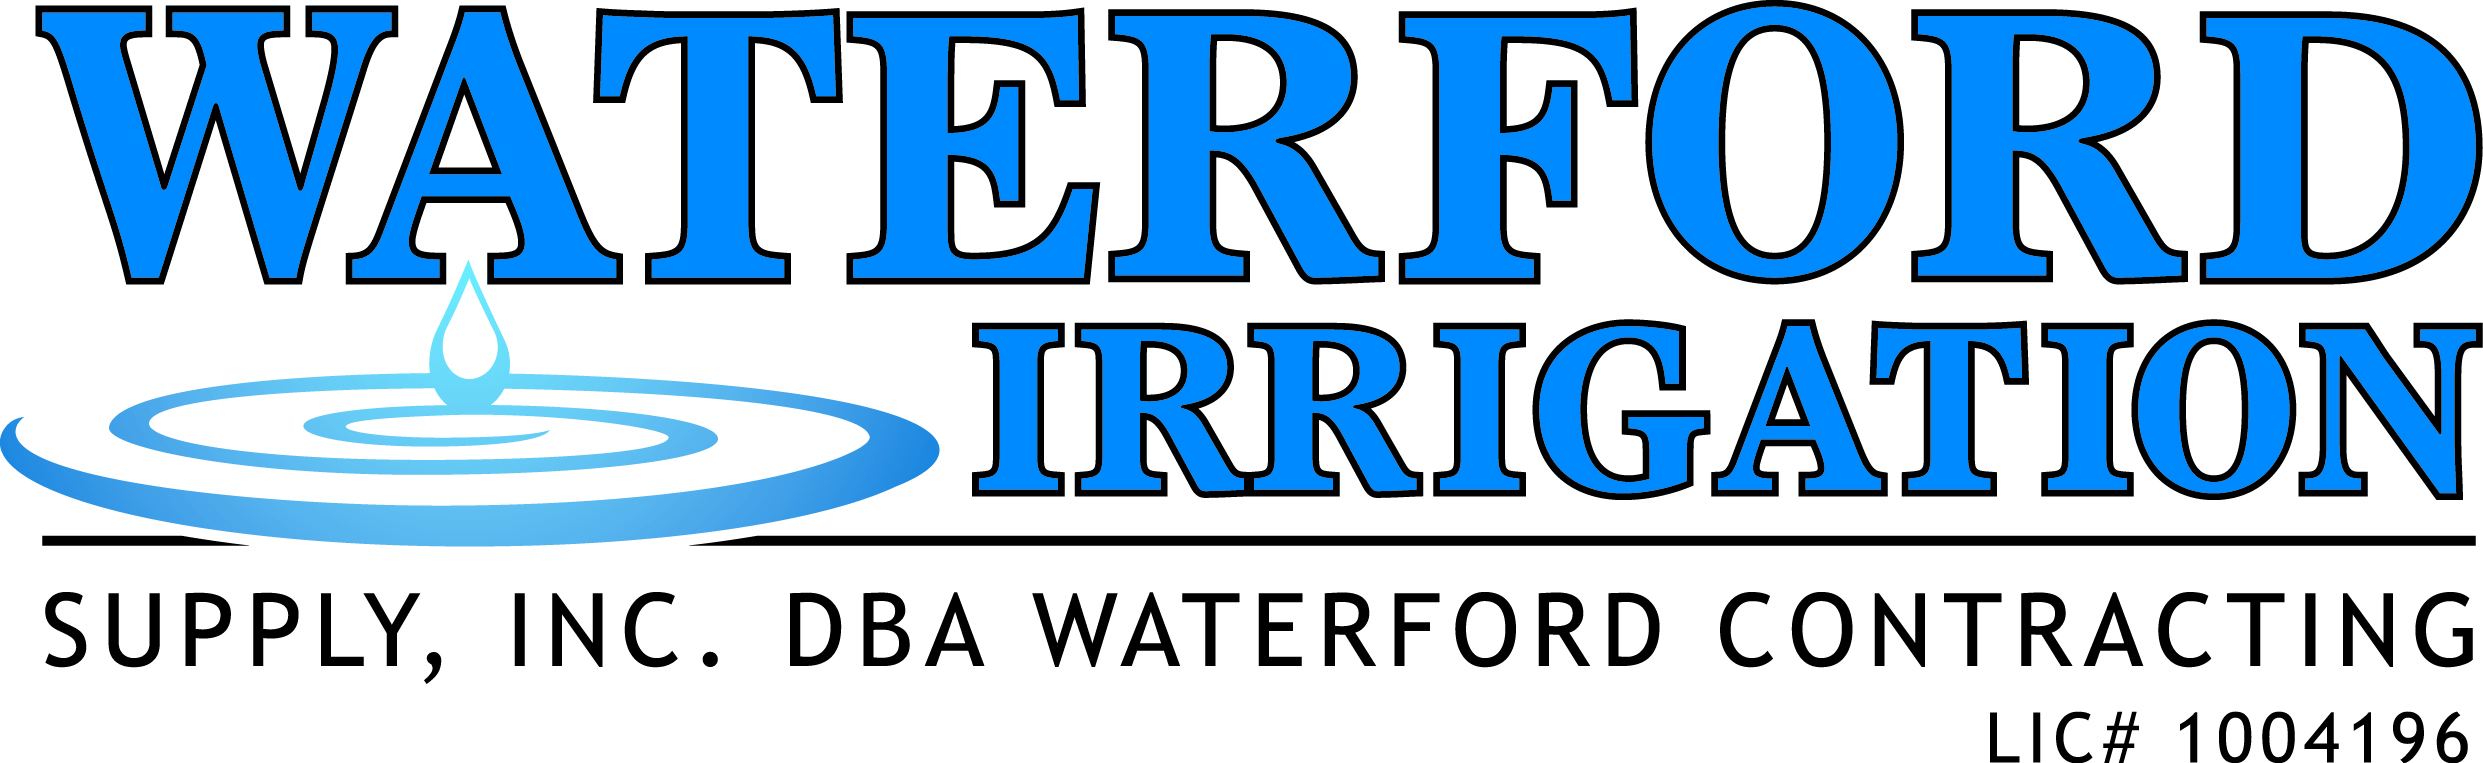 waterford irrigation logo